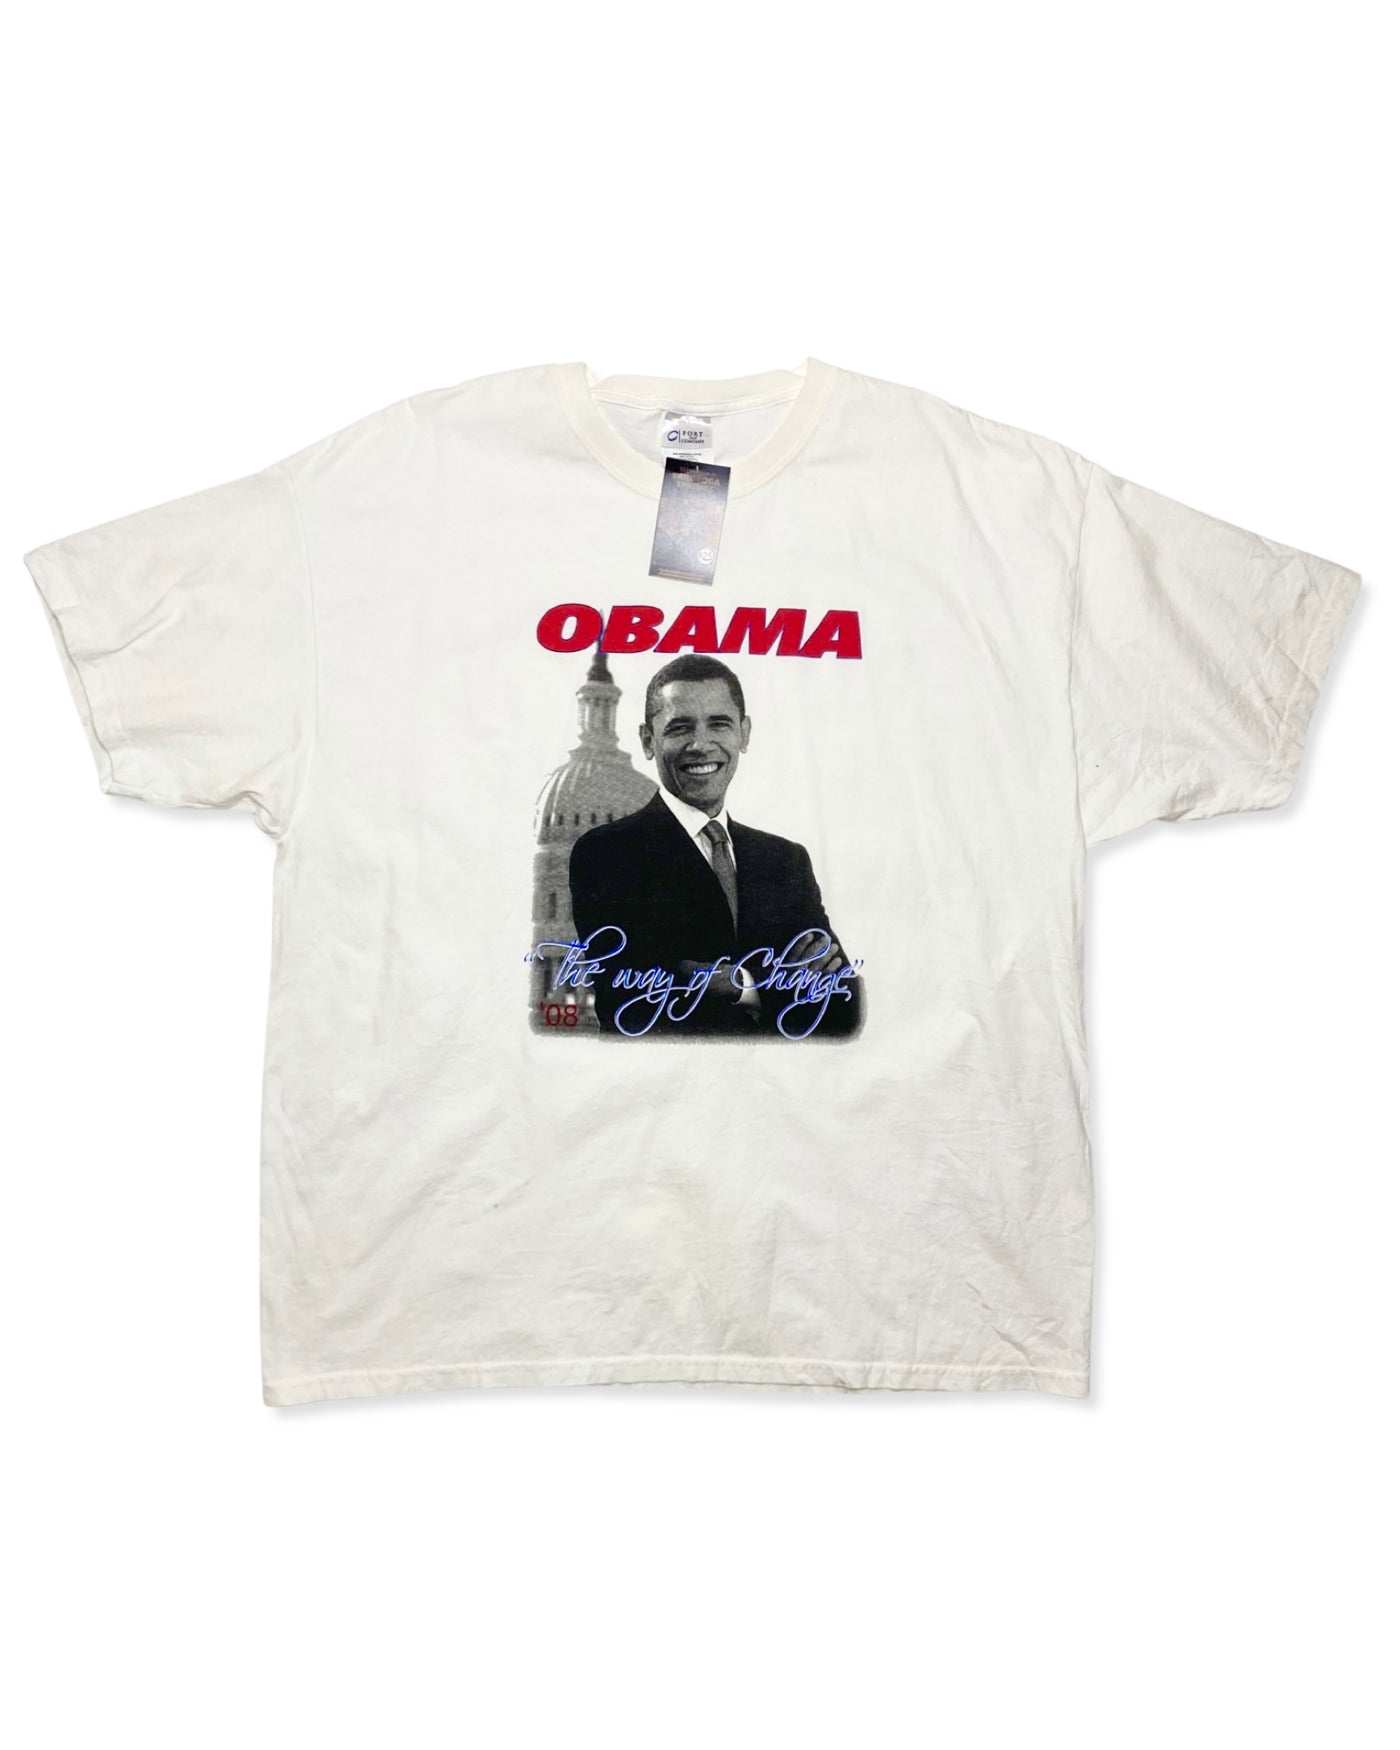 2008 President Obama T-Shirt